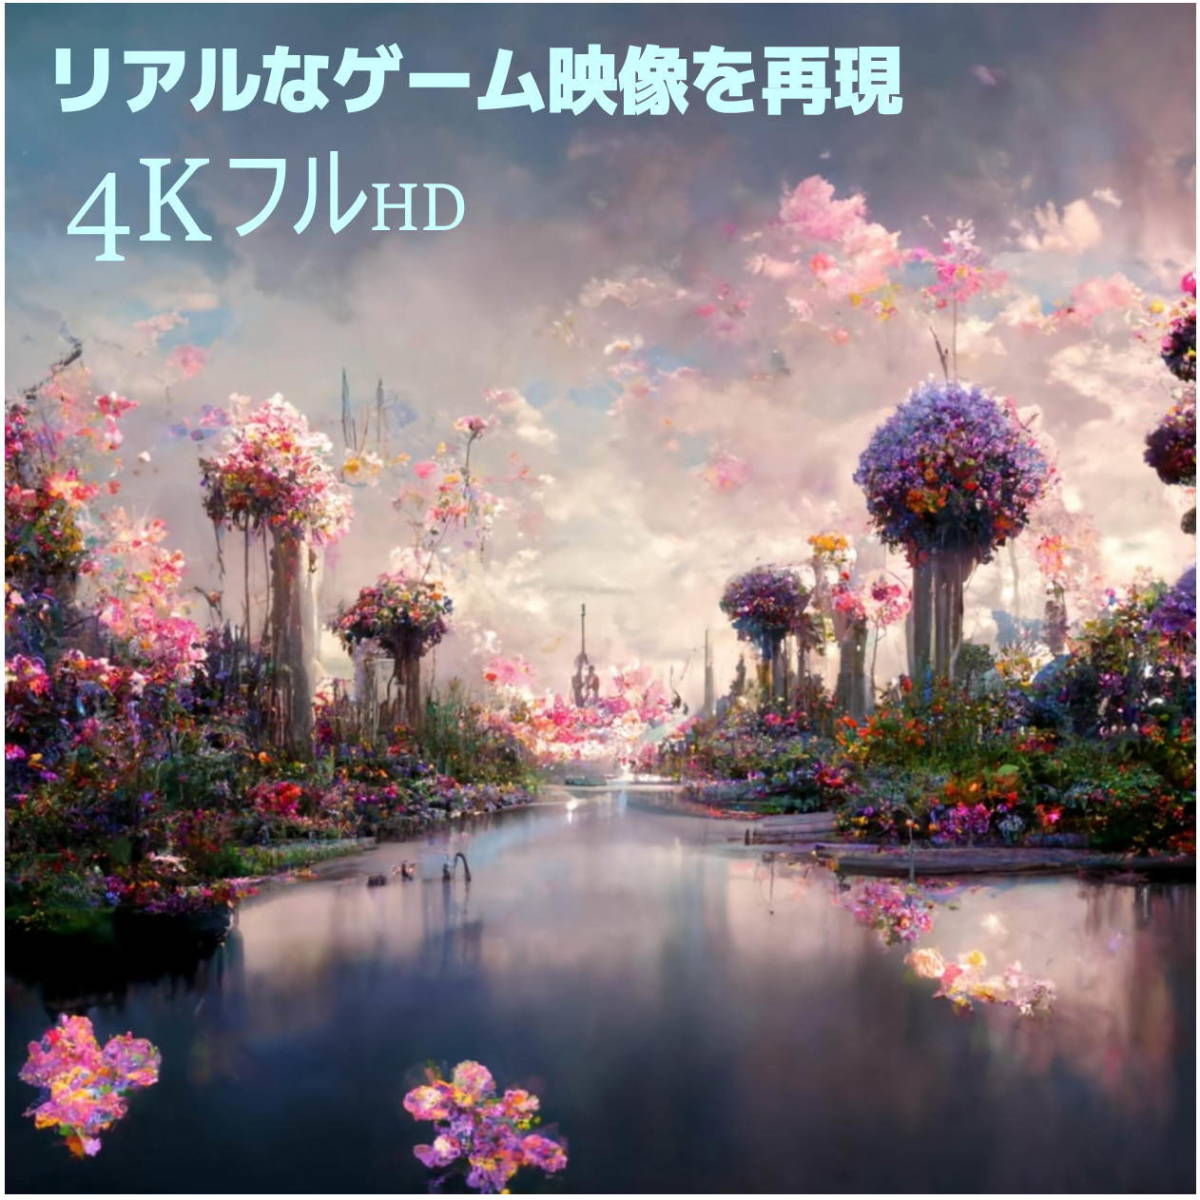 ■□■□ハイスピード Ver2.0 1m HDMI延長ケーブル (オス/メス) 4KフルHD 3D ネットワーク 高品質 2HD10E【送料無料】_画像3